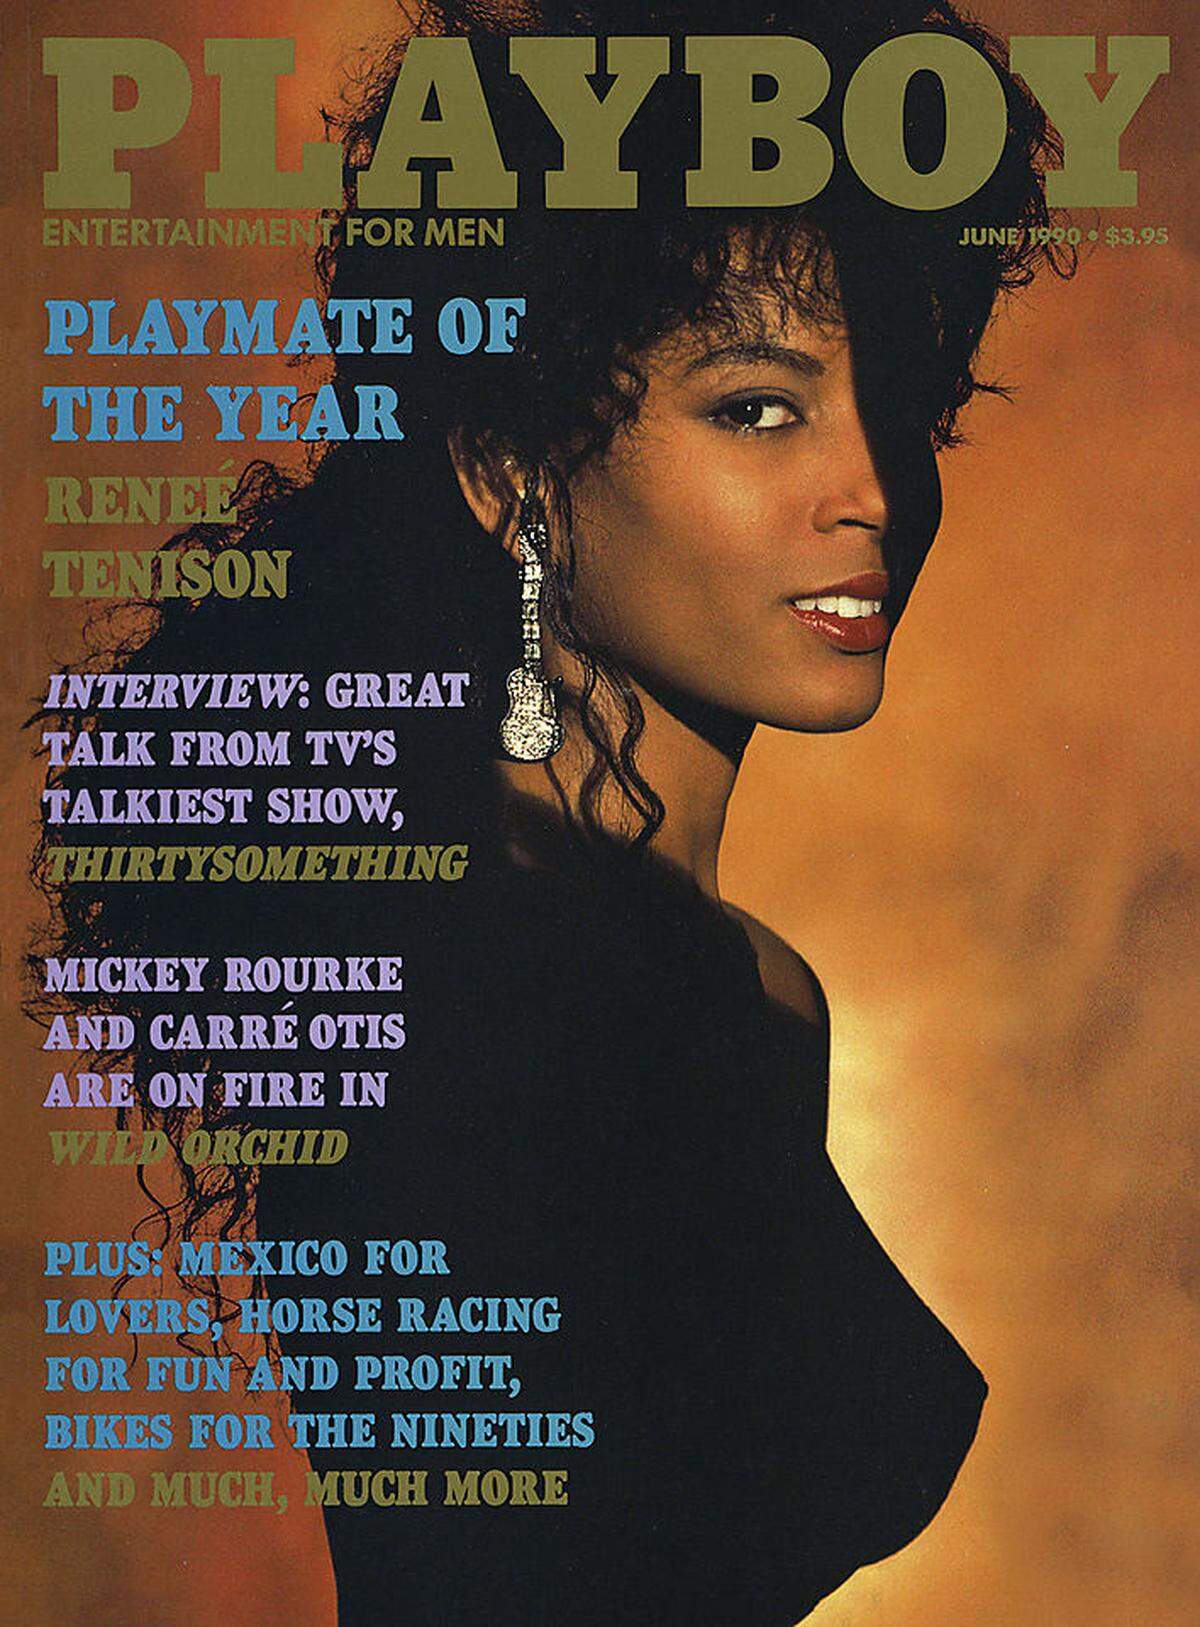 Ein wahrhaft ikonischer Auftritt auf dem "Playboy"-Cover war jener von Renee Tenison: Sie war die erste Afroamerikanerin, die zum "Playmate des Jahres" gekührt wurde - und zwar im Jahr 1990. Im Bild: Tenison auf dem Juni-Cover des "Playboy" 1990